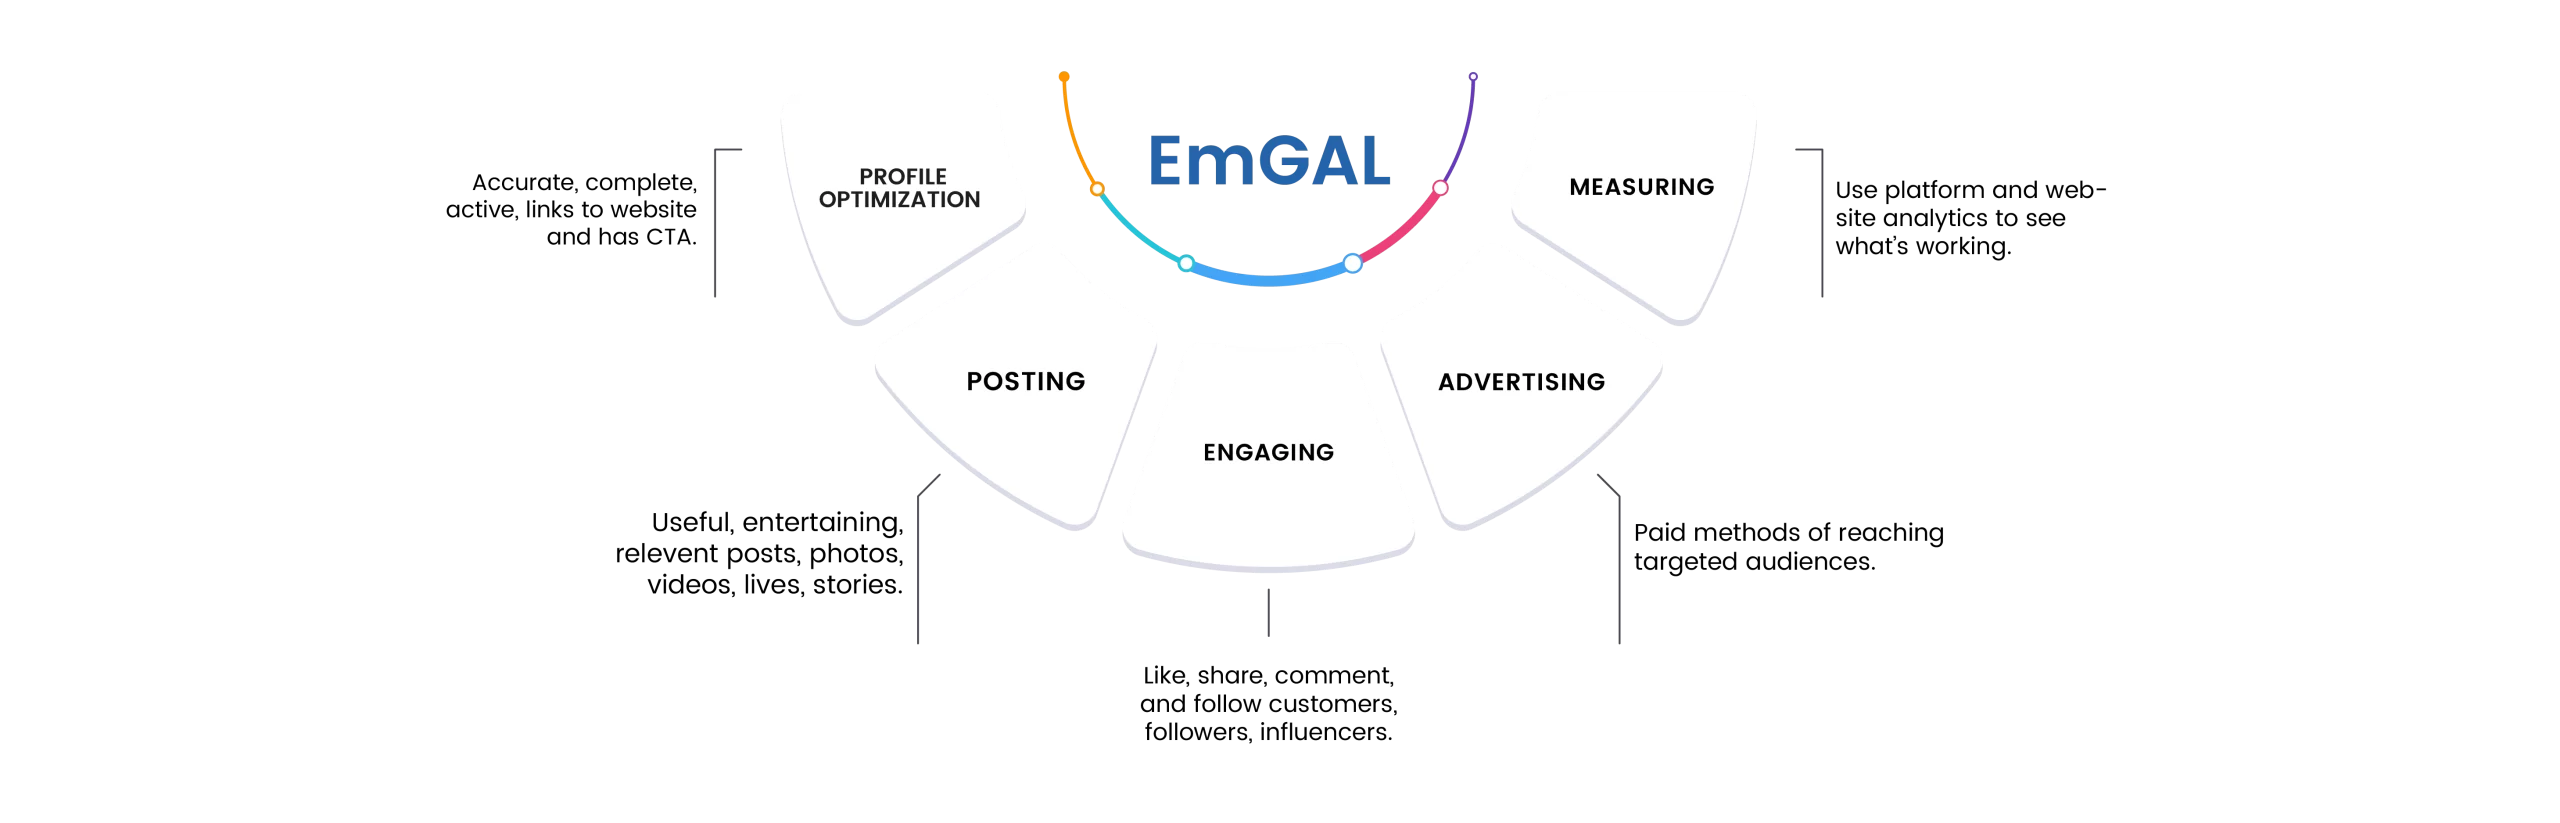 EmGAL Social Marketing